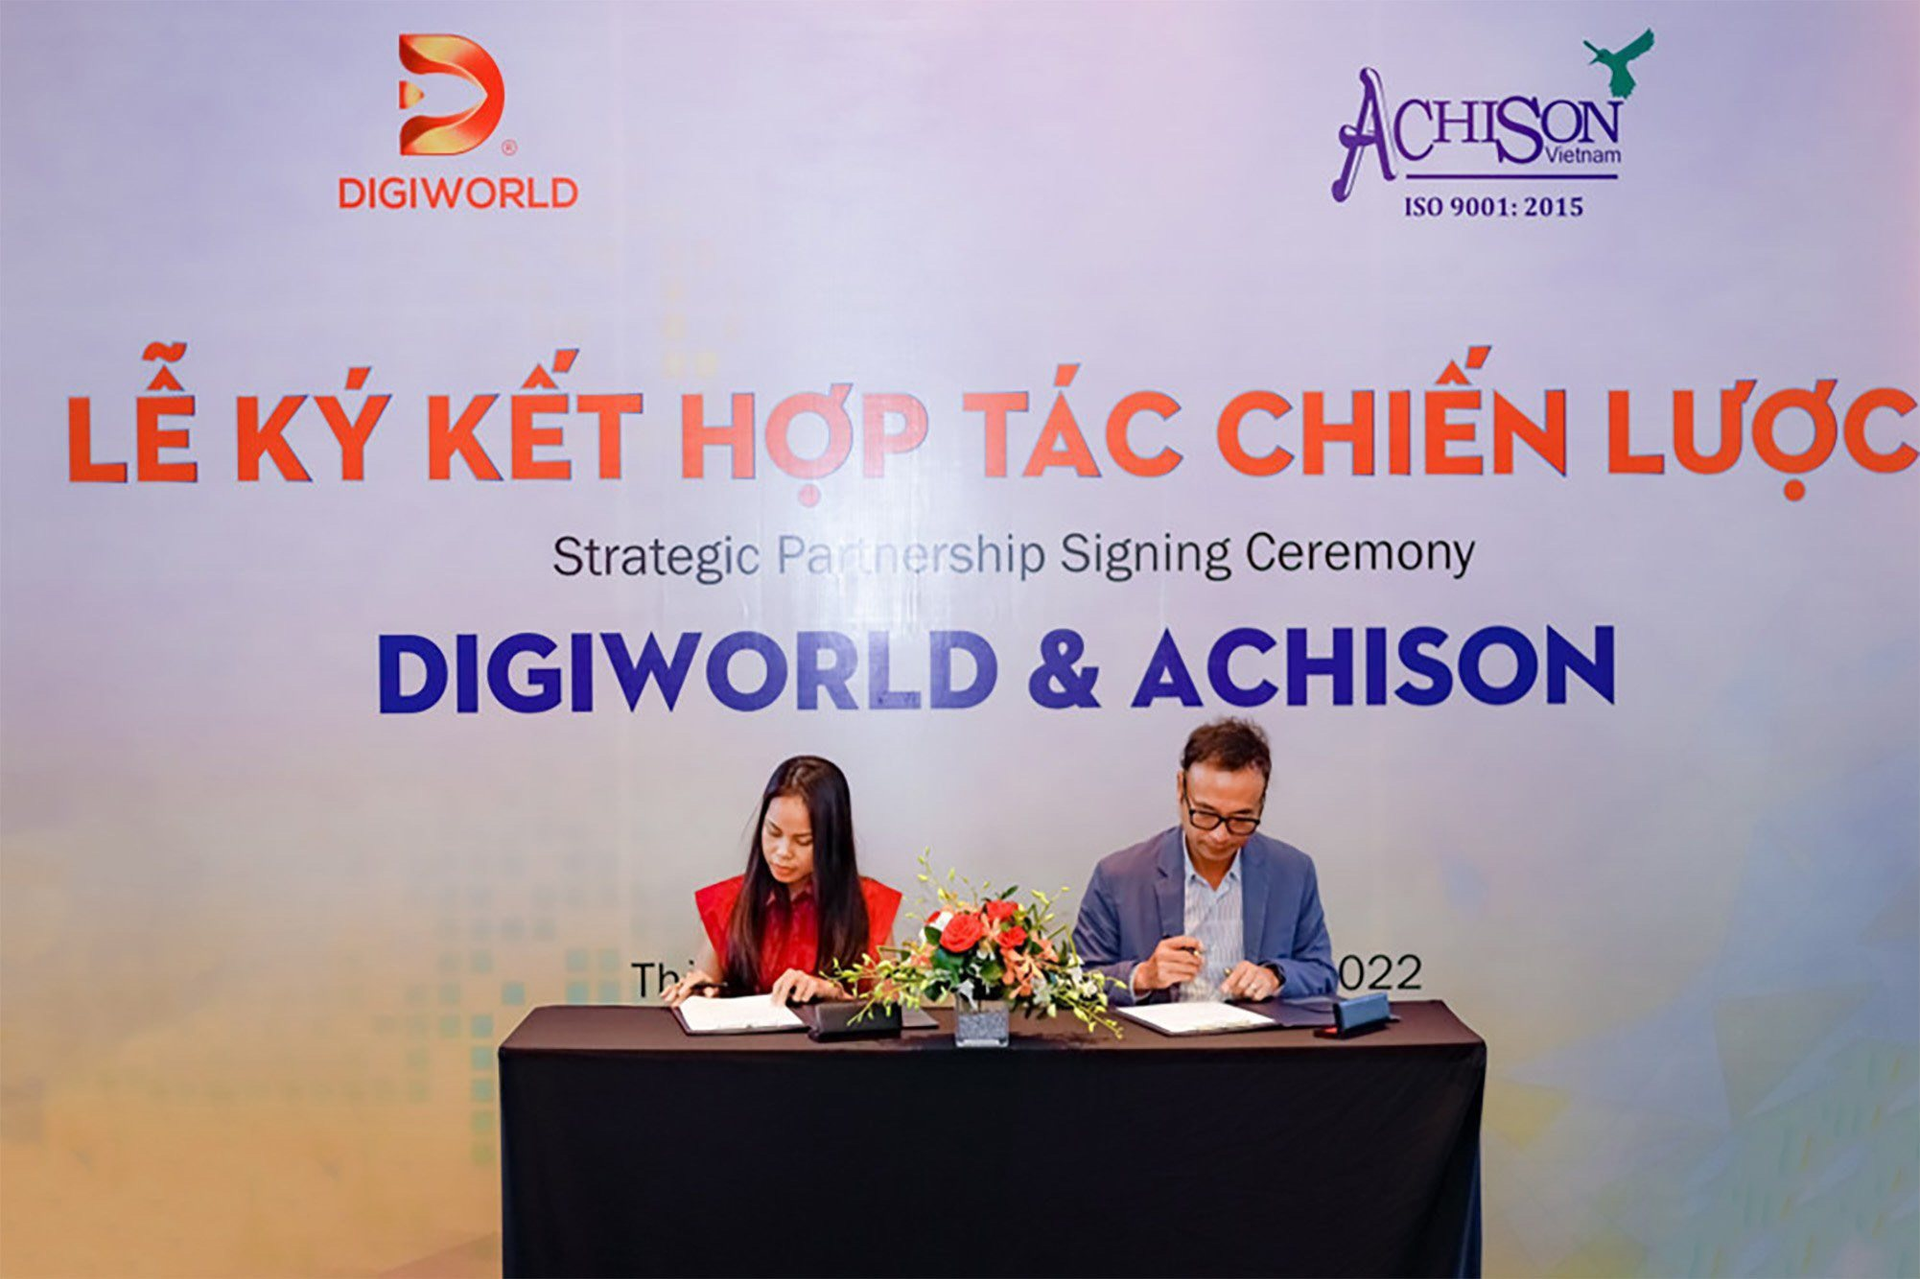 Digiworld ký kết hợp tác chiến lược cùng Achison, chính thức gia nhập ngành phân phối thiết bị công nghiệp và bảo hộ cá nhân